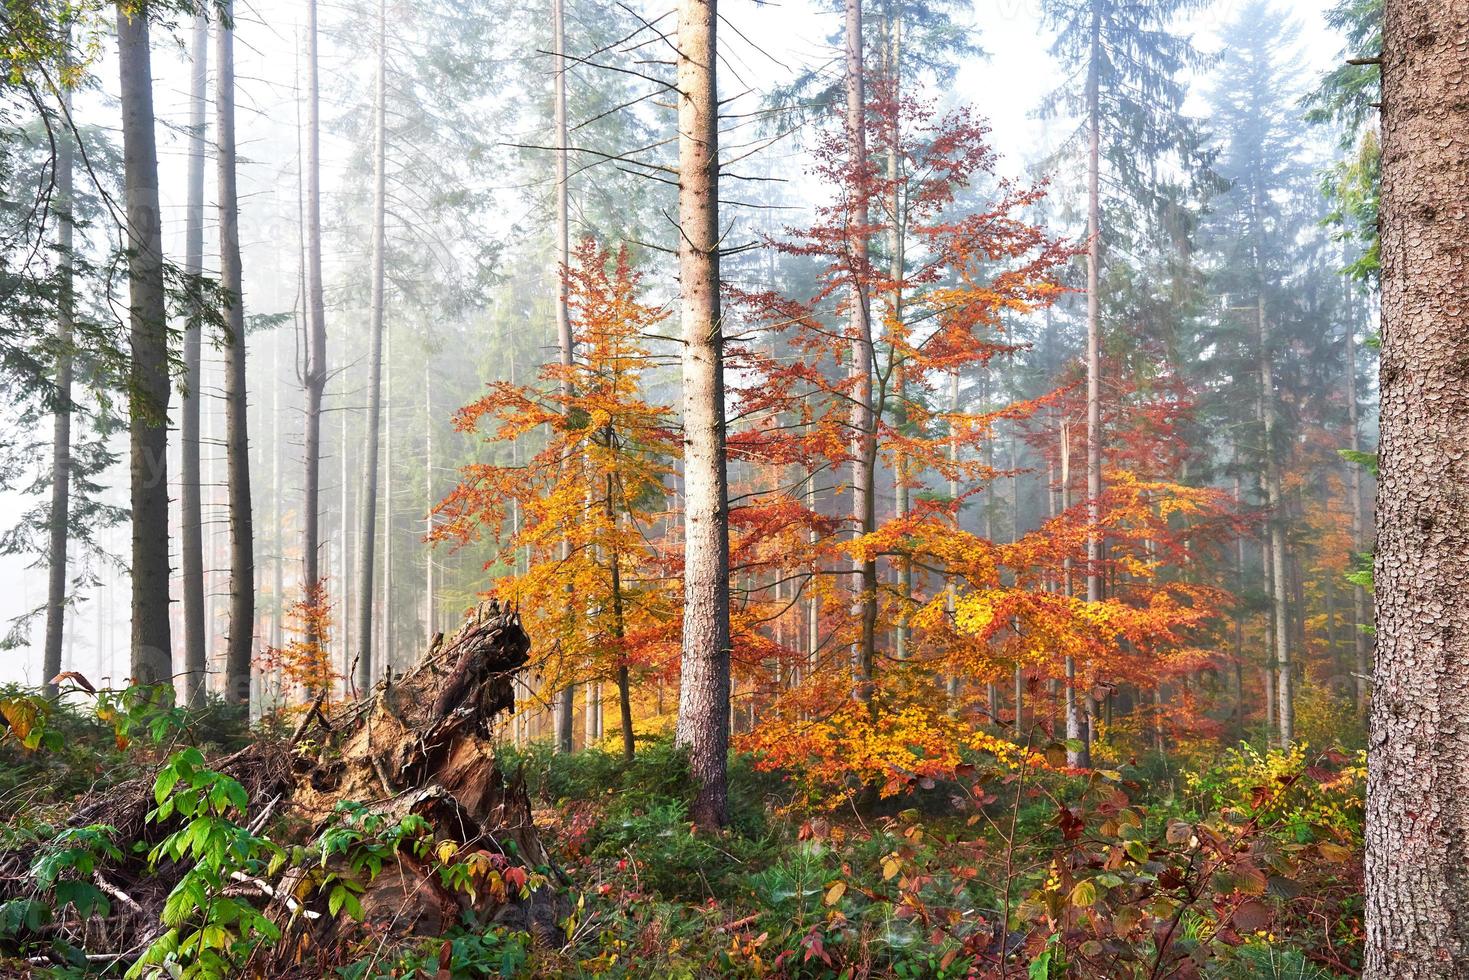 bela manhã na floresta de outono enevoada com majestosas árvores coloridas foto